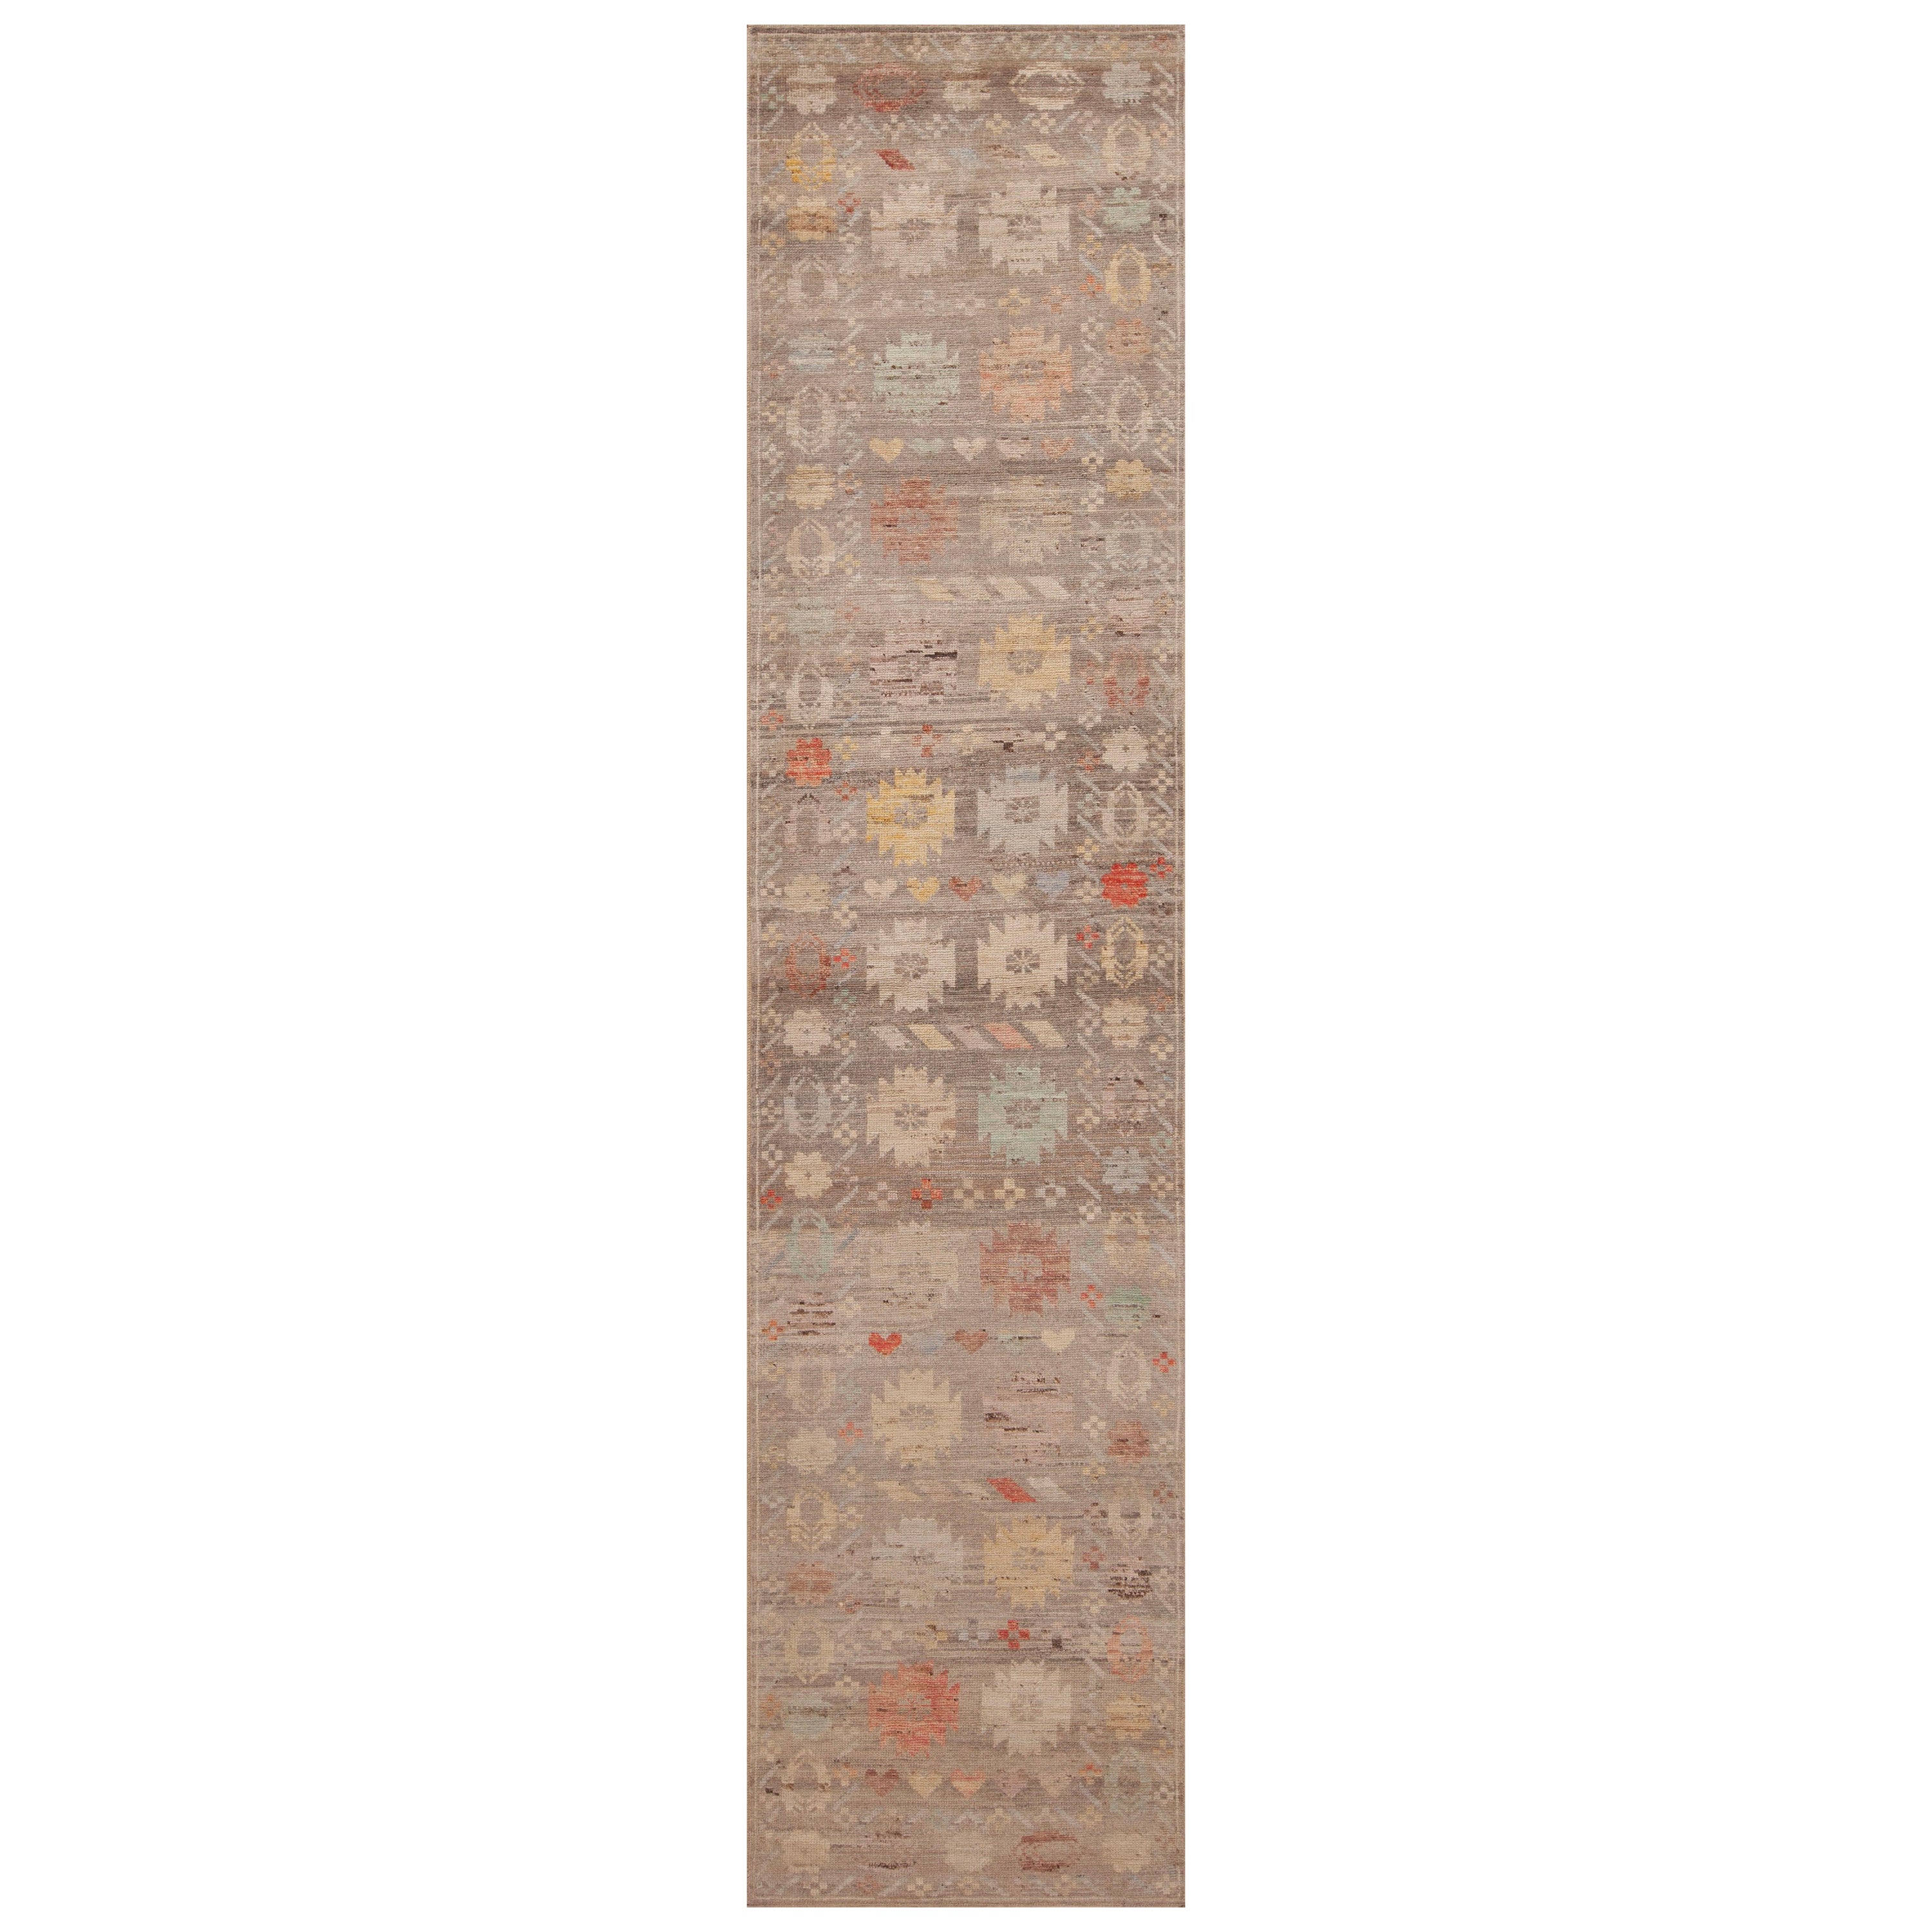 Collection Nazmiyal, tapis de couloir Abrash tribal, géométrique, rustique et moderne, 3' x 13'